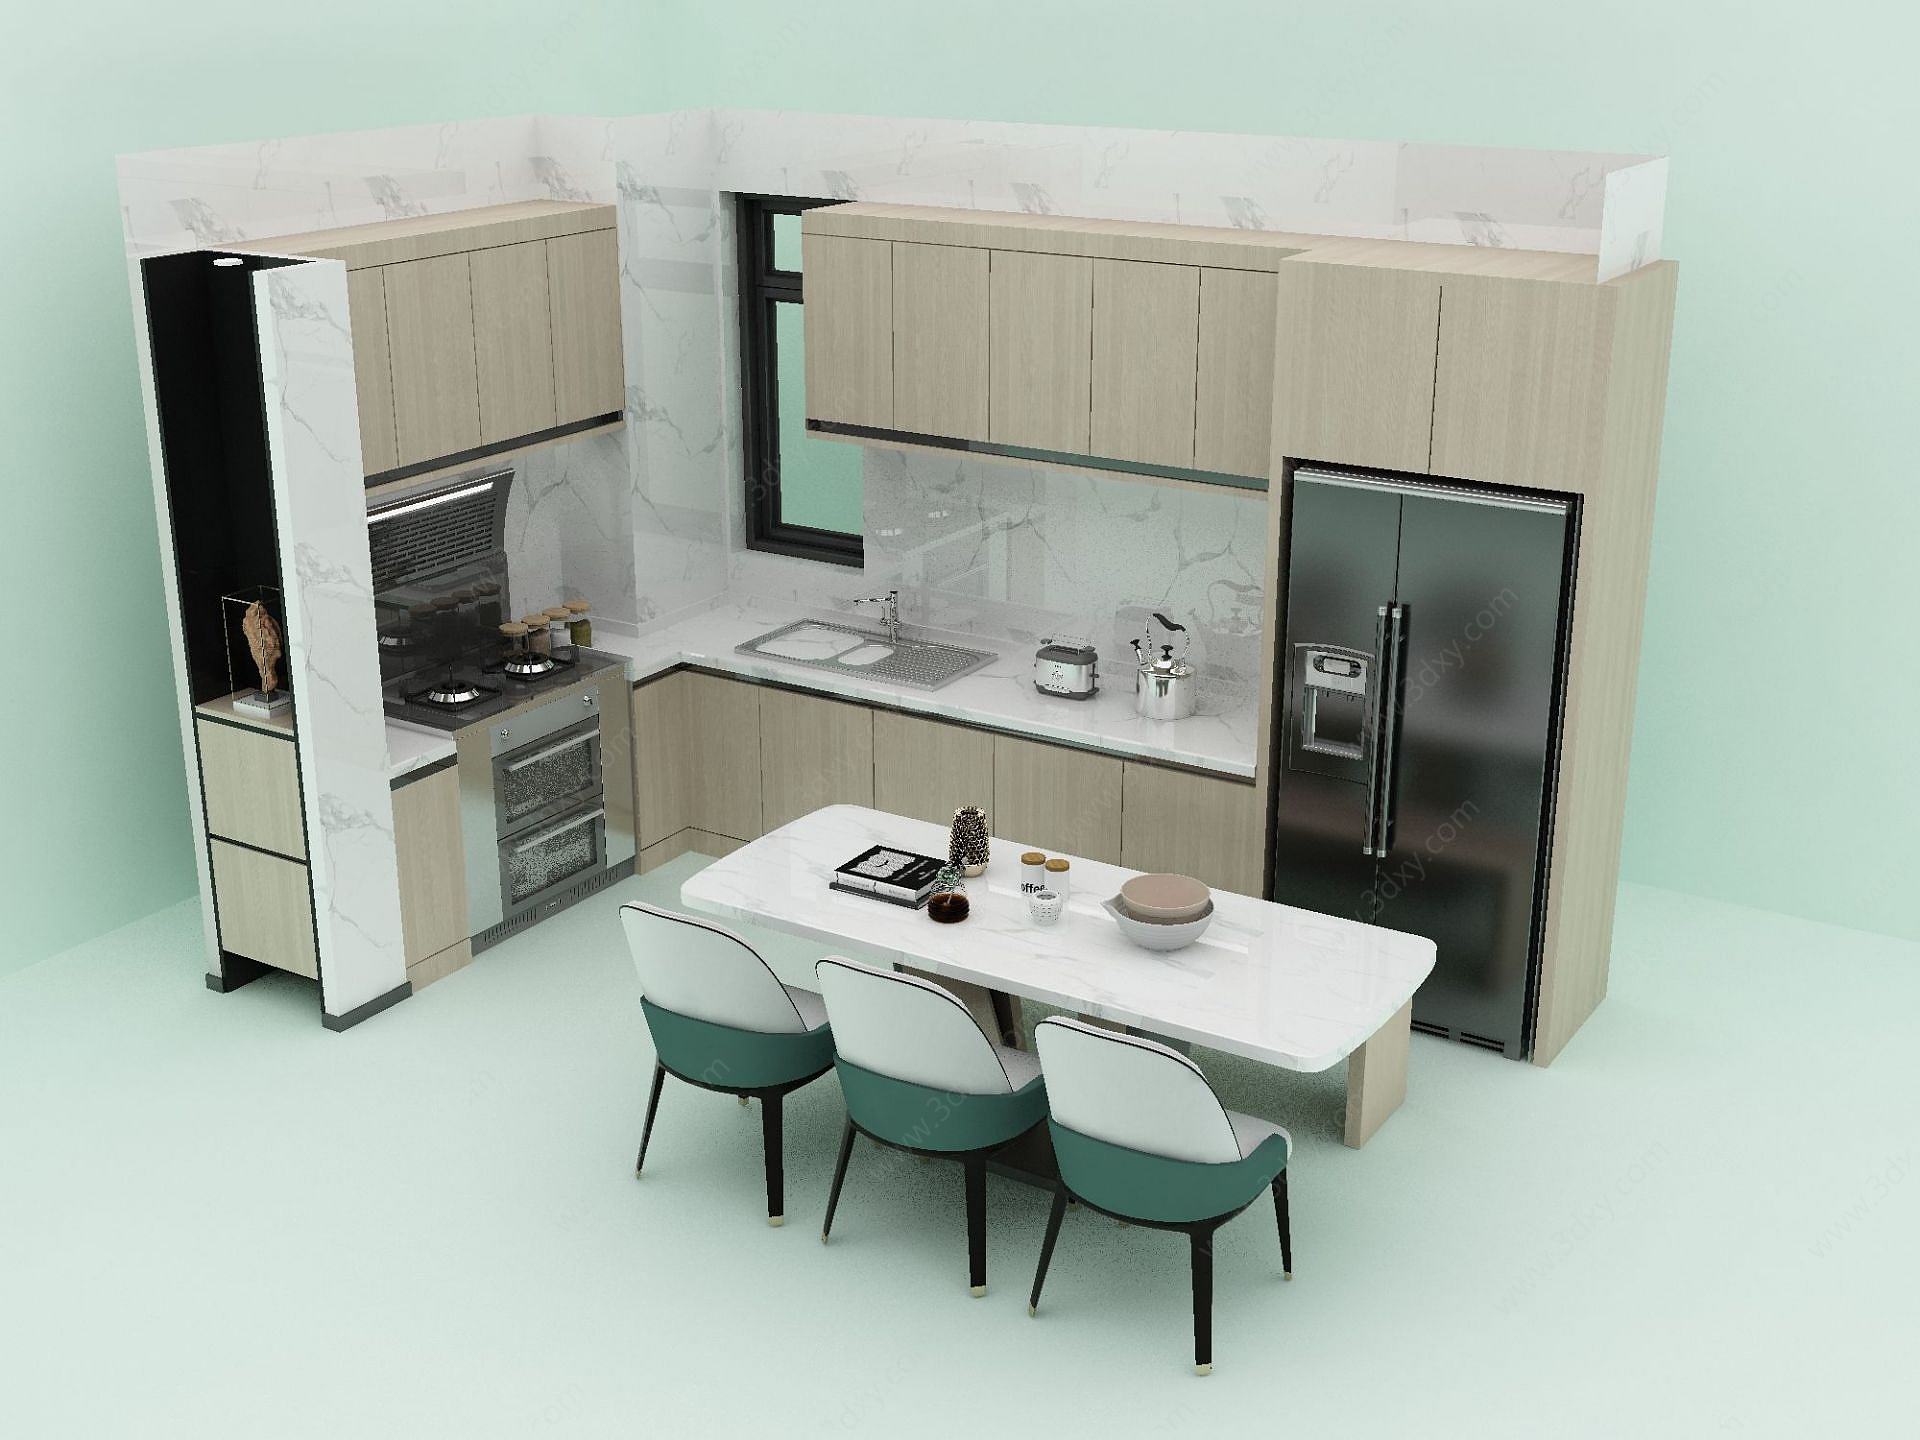 厨房餐厅3D模型